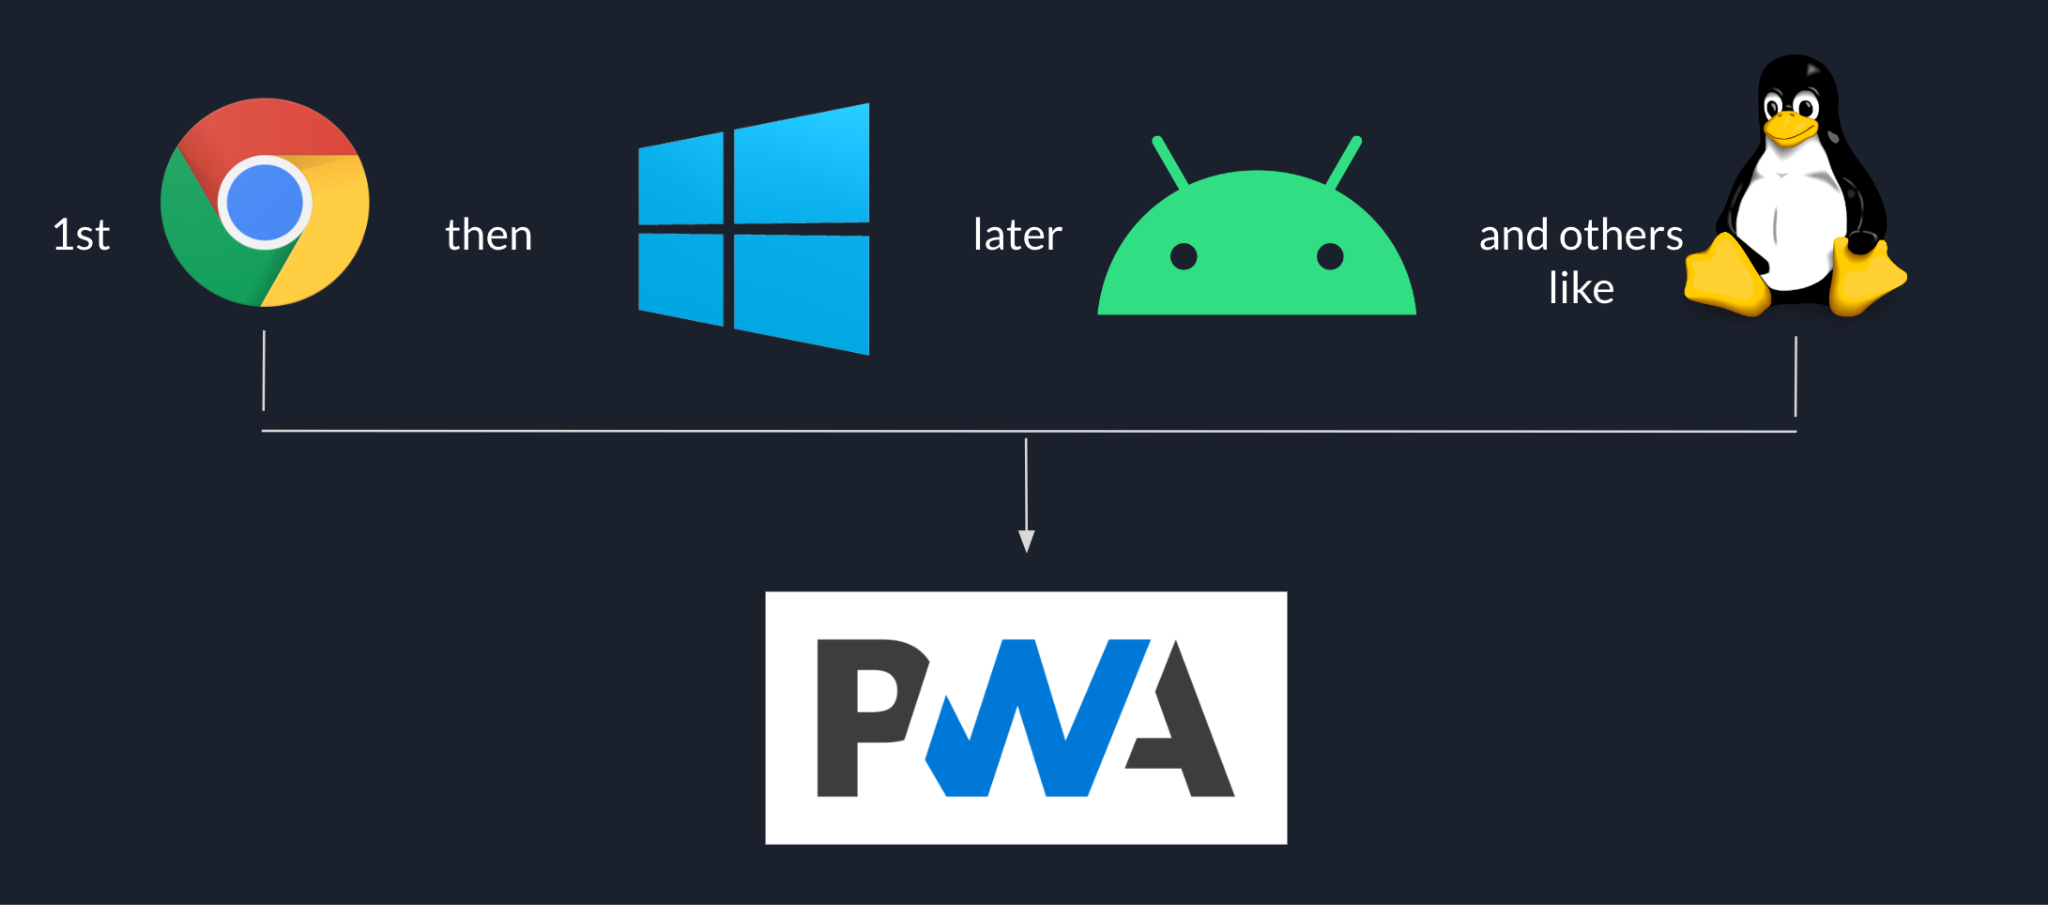 Последовательность развертывания Goodnotes начинается с Chrome, затем Windows, затем Android и в конце других платформ, таких как Linux, и все они основаны на PWA.